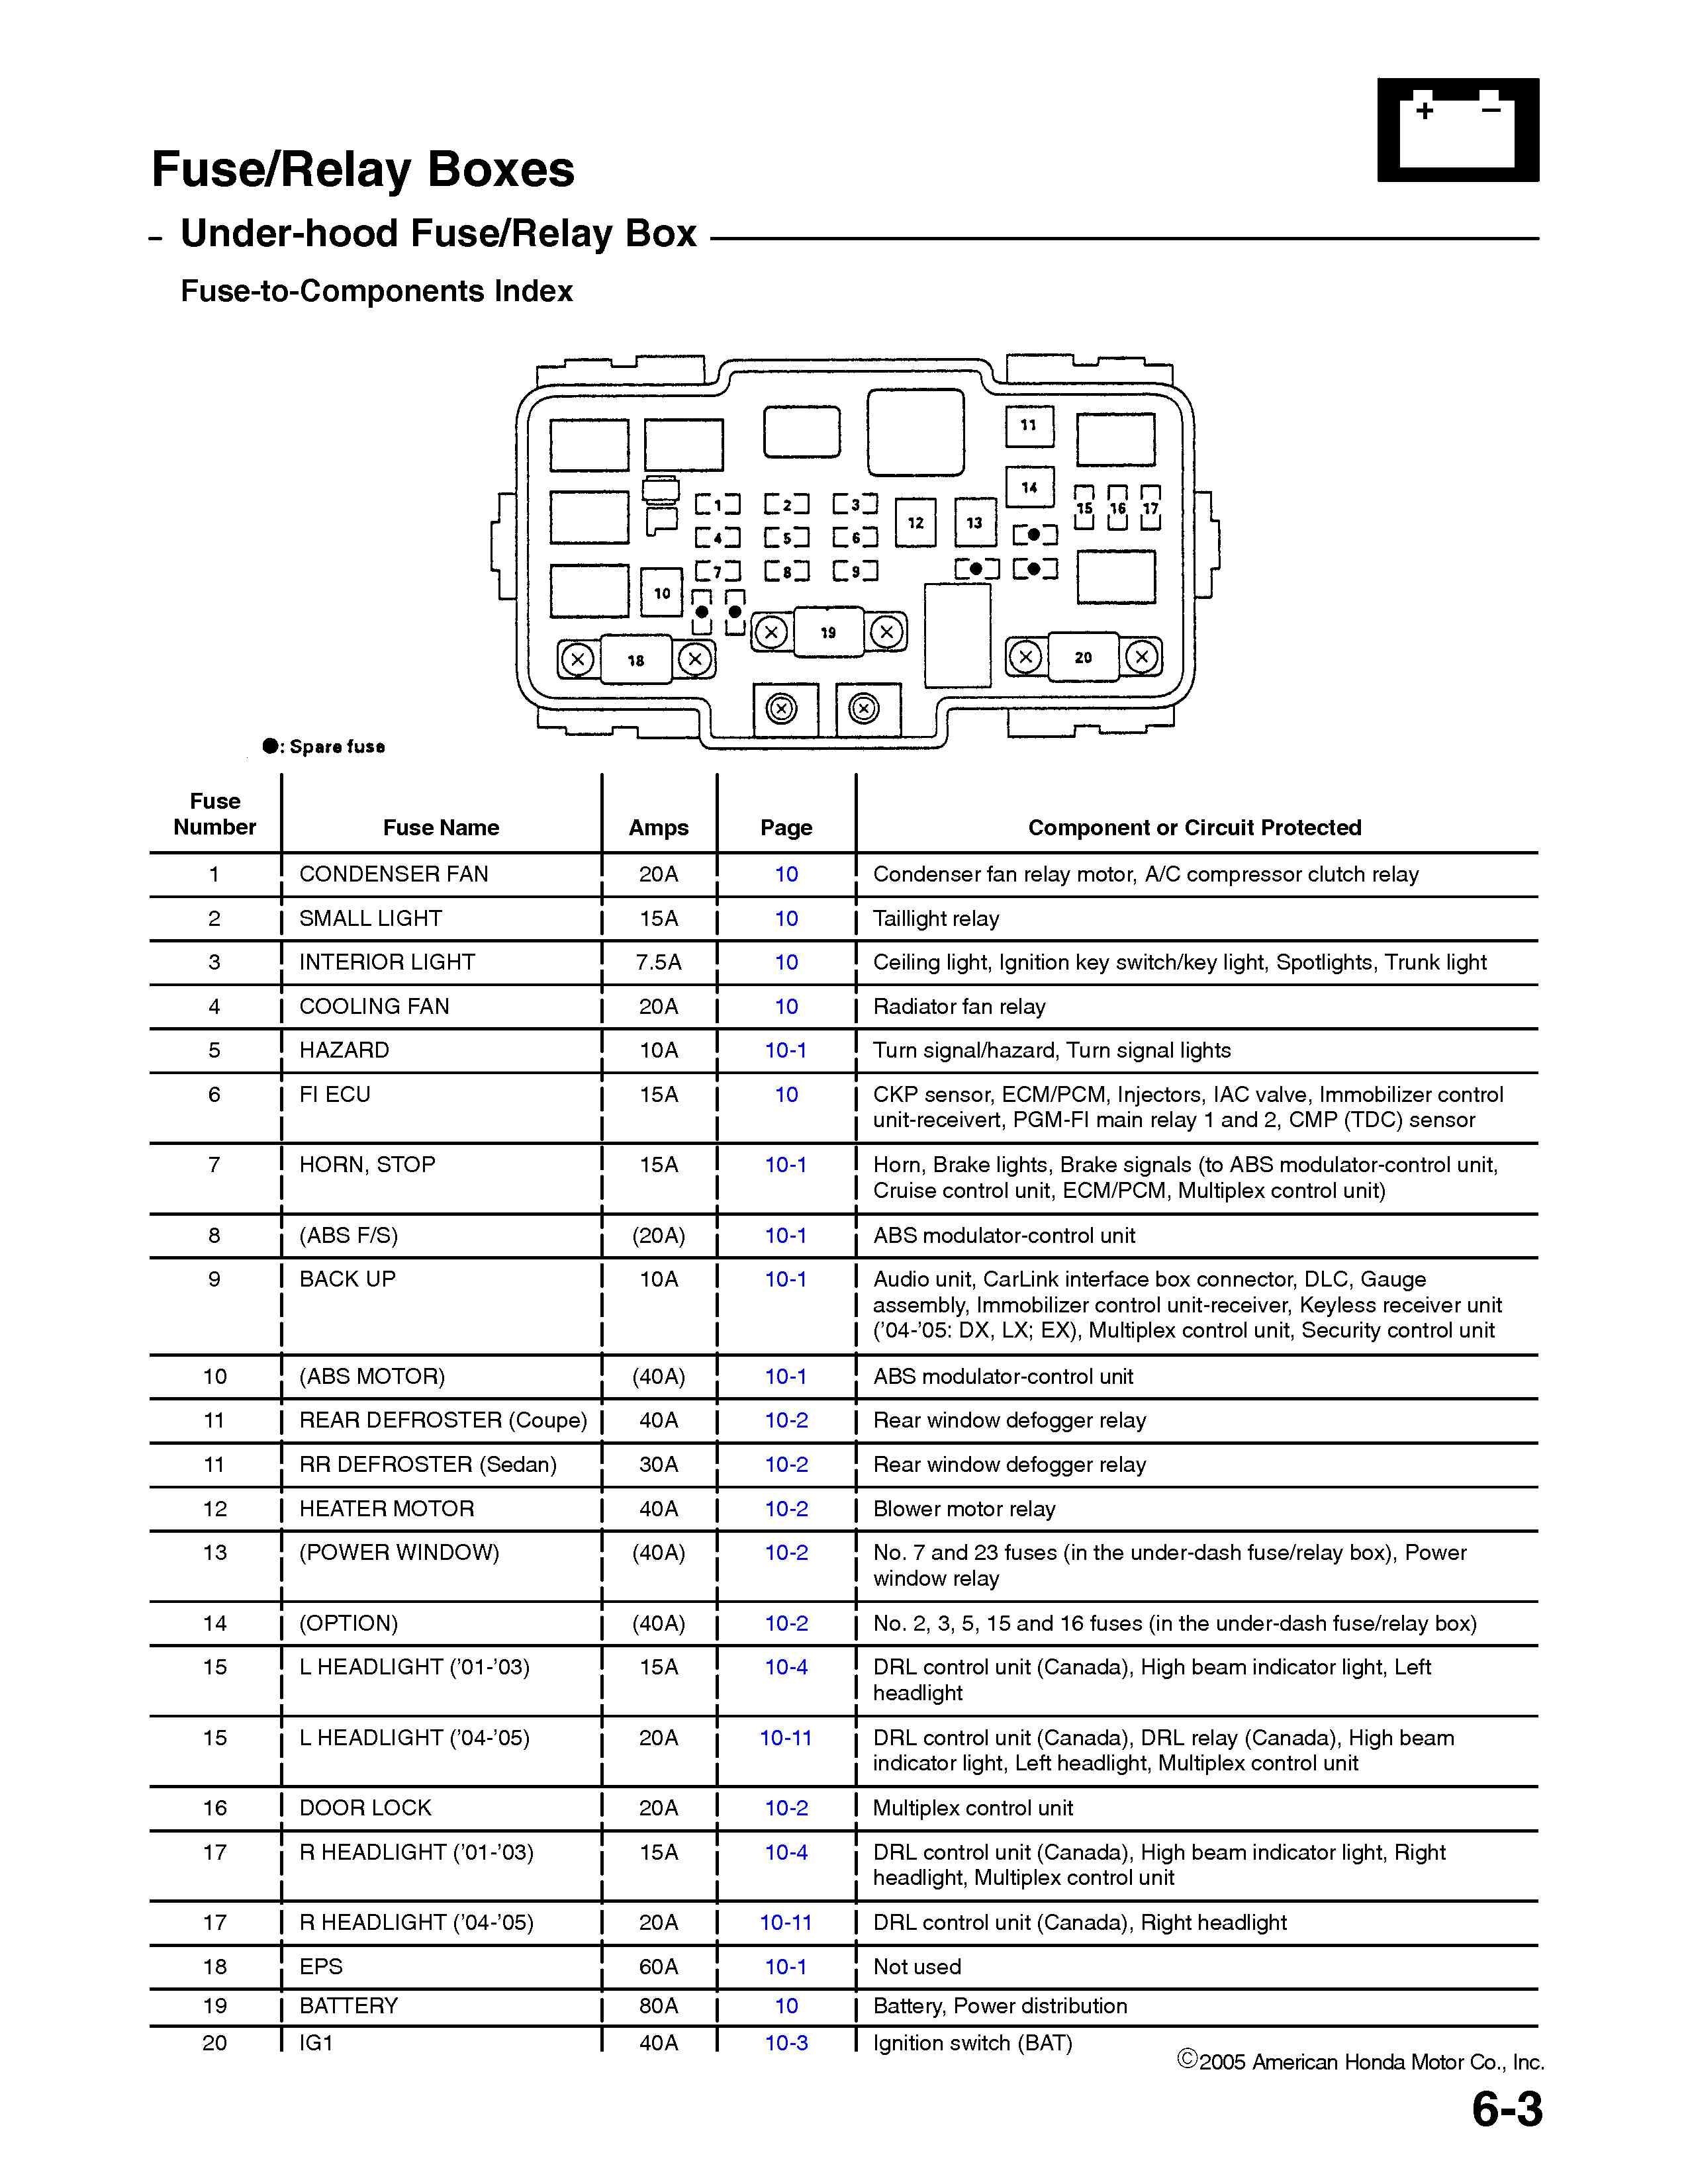 95 Civic Engine Diagram Honda Civic Fuse Box Diagram Graphic Facile Snapshot More 05 06 04 Of 95 Civic Engine Diagram